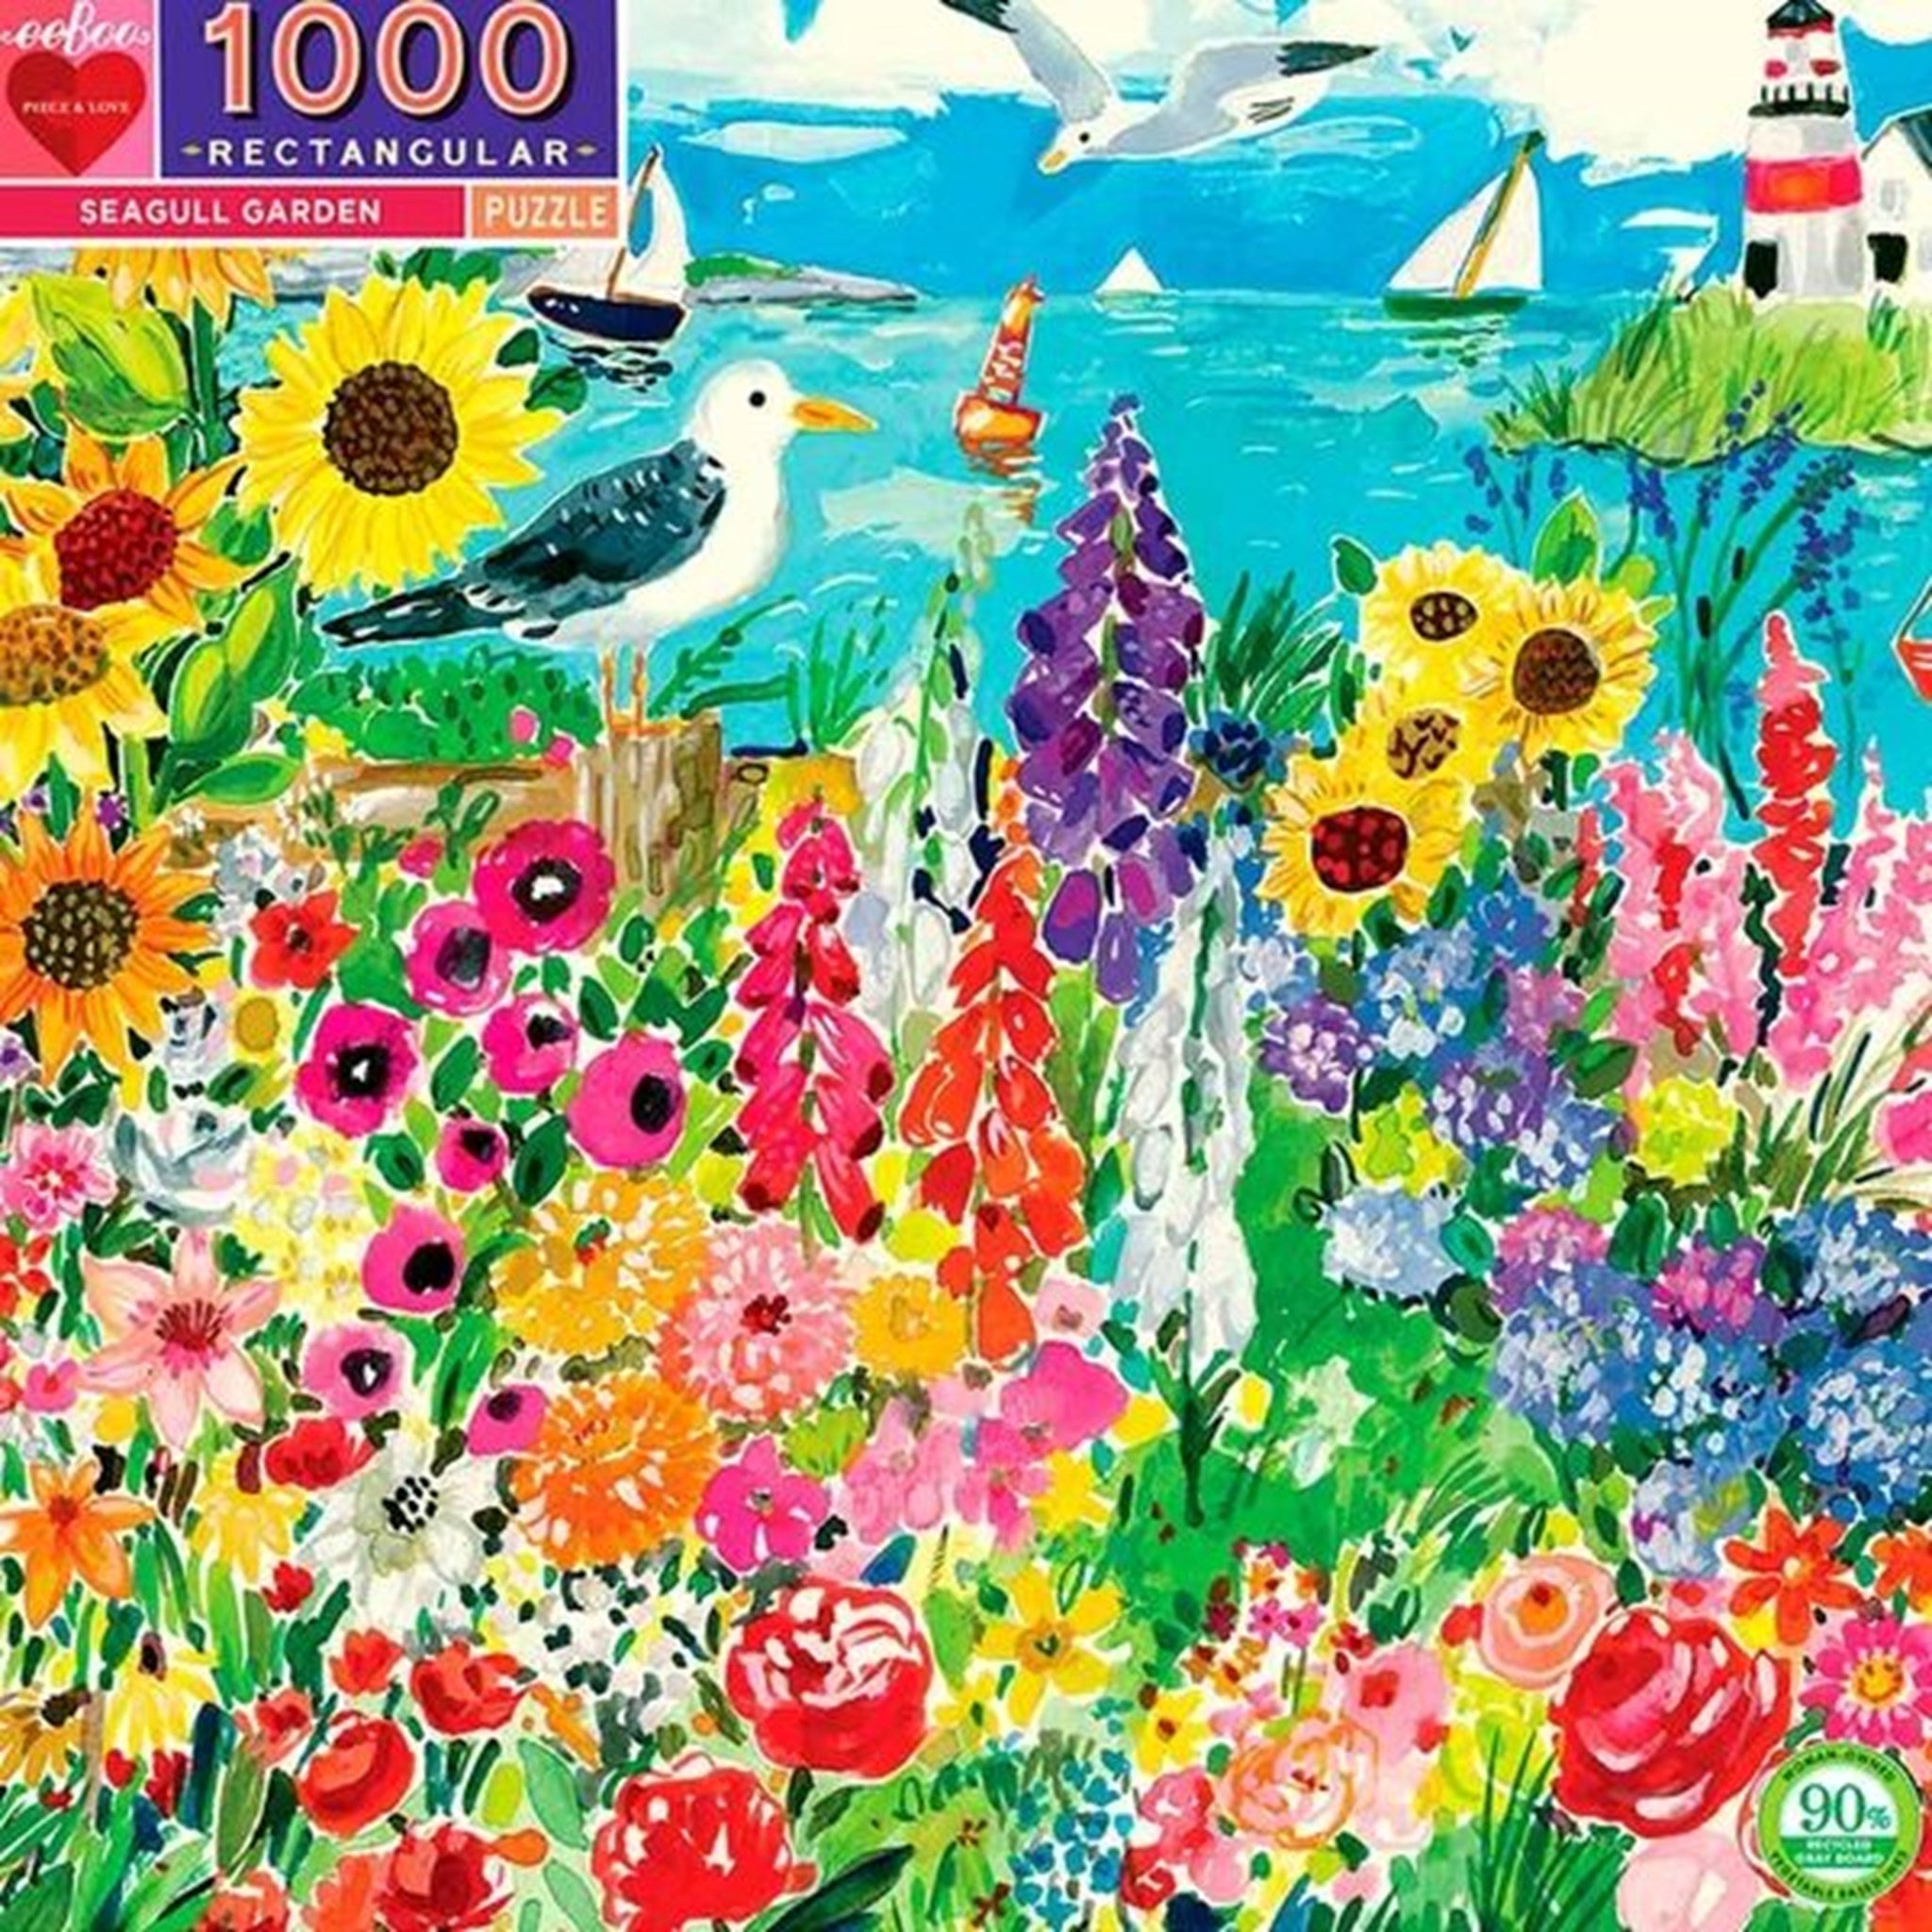 Eeboo Puzzle 1000 Pieces - SeaGuld